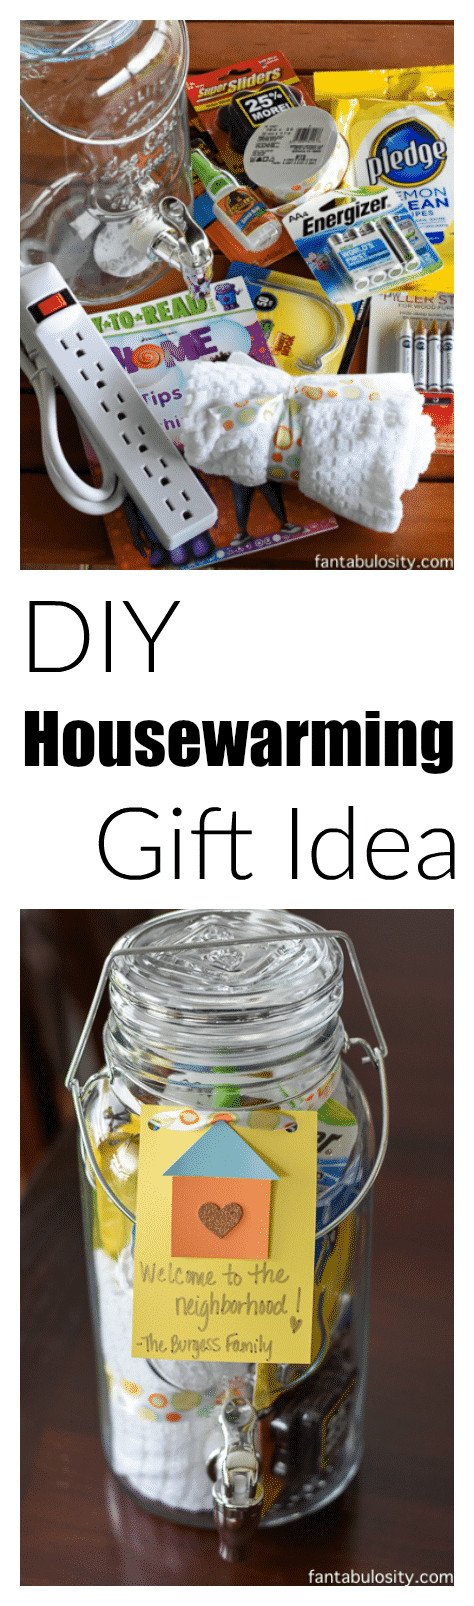 DIY Housewarming Gift
 DIY Housewarming Gift Idea Drink Dispenser Fantabulosity